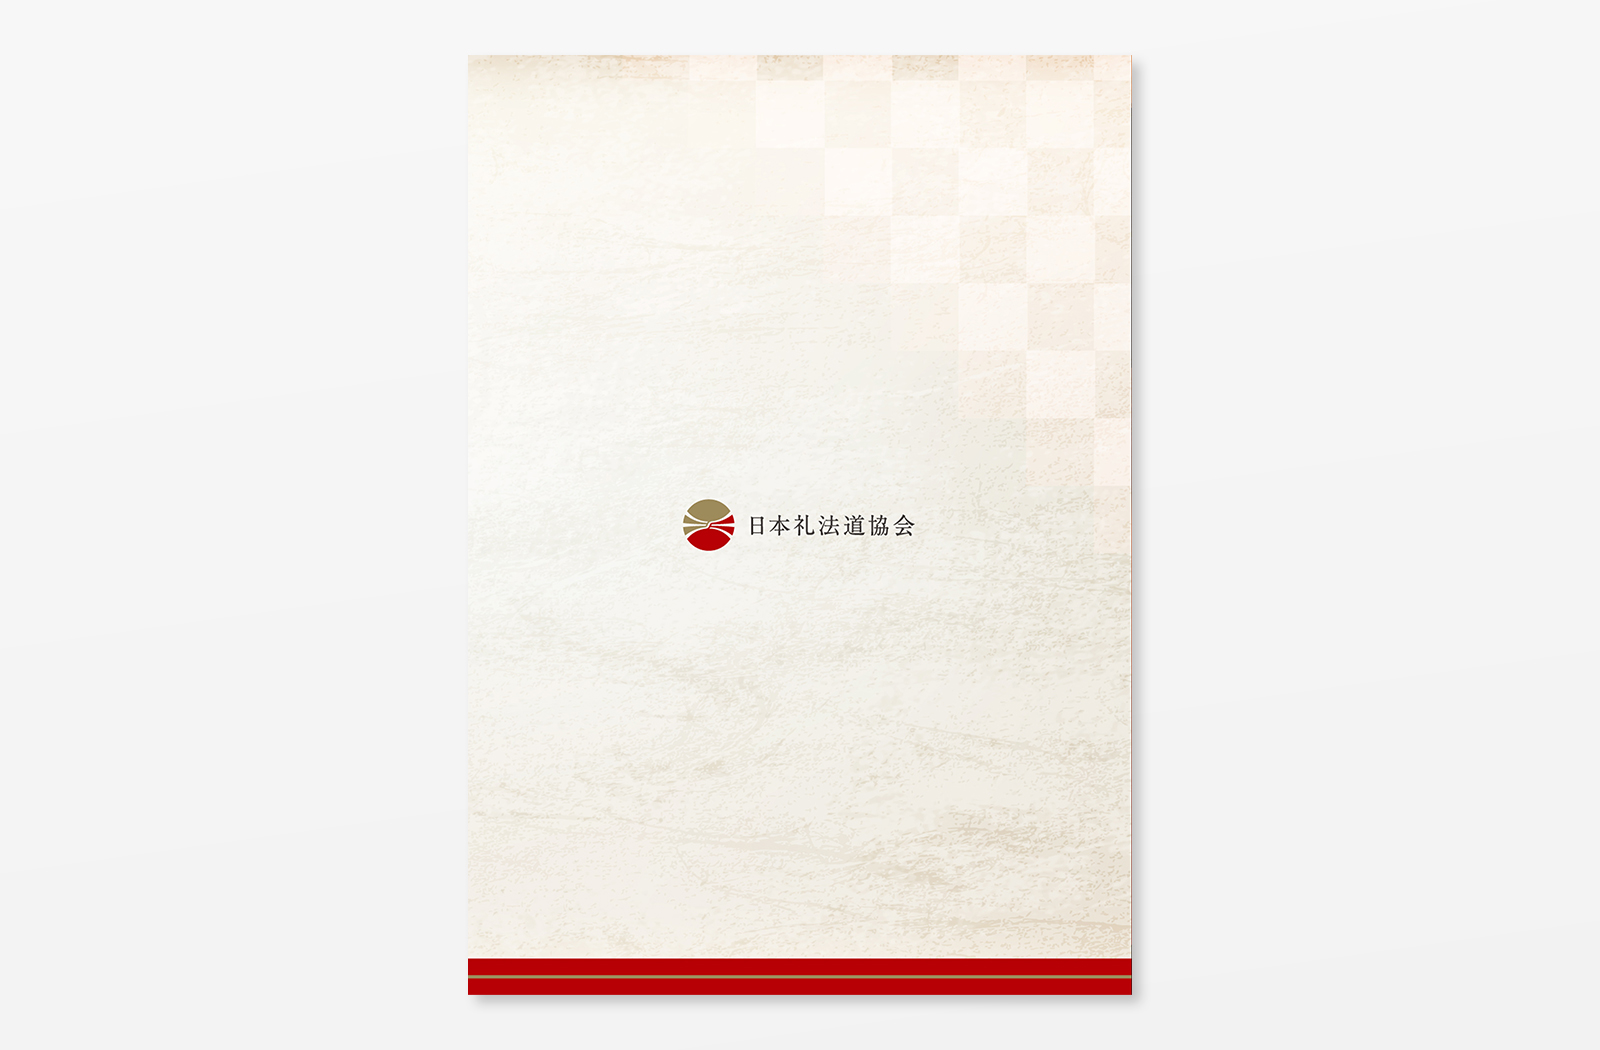 一般社団法人 日本礼法道協会 様のパンフレットデザイン